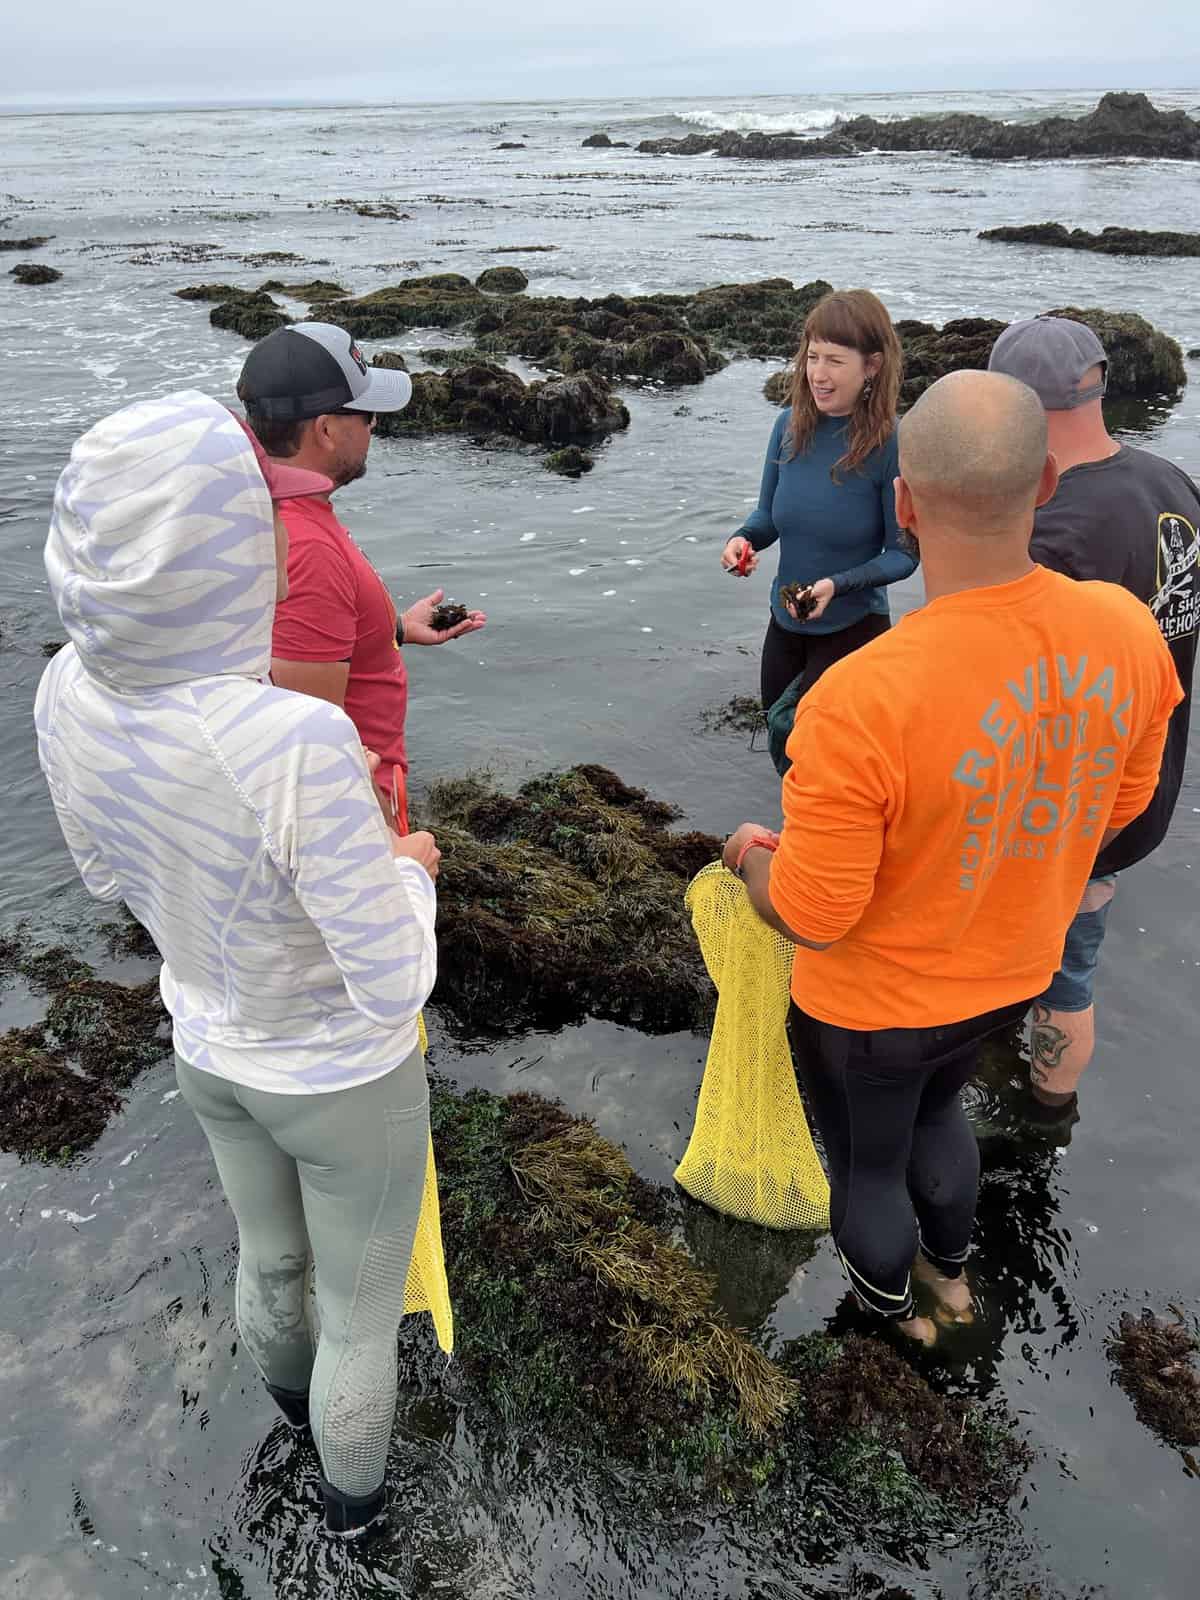 Harvesting seaweed adventure with kelpful